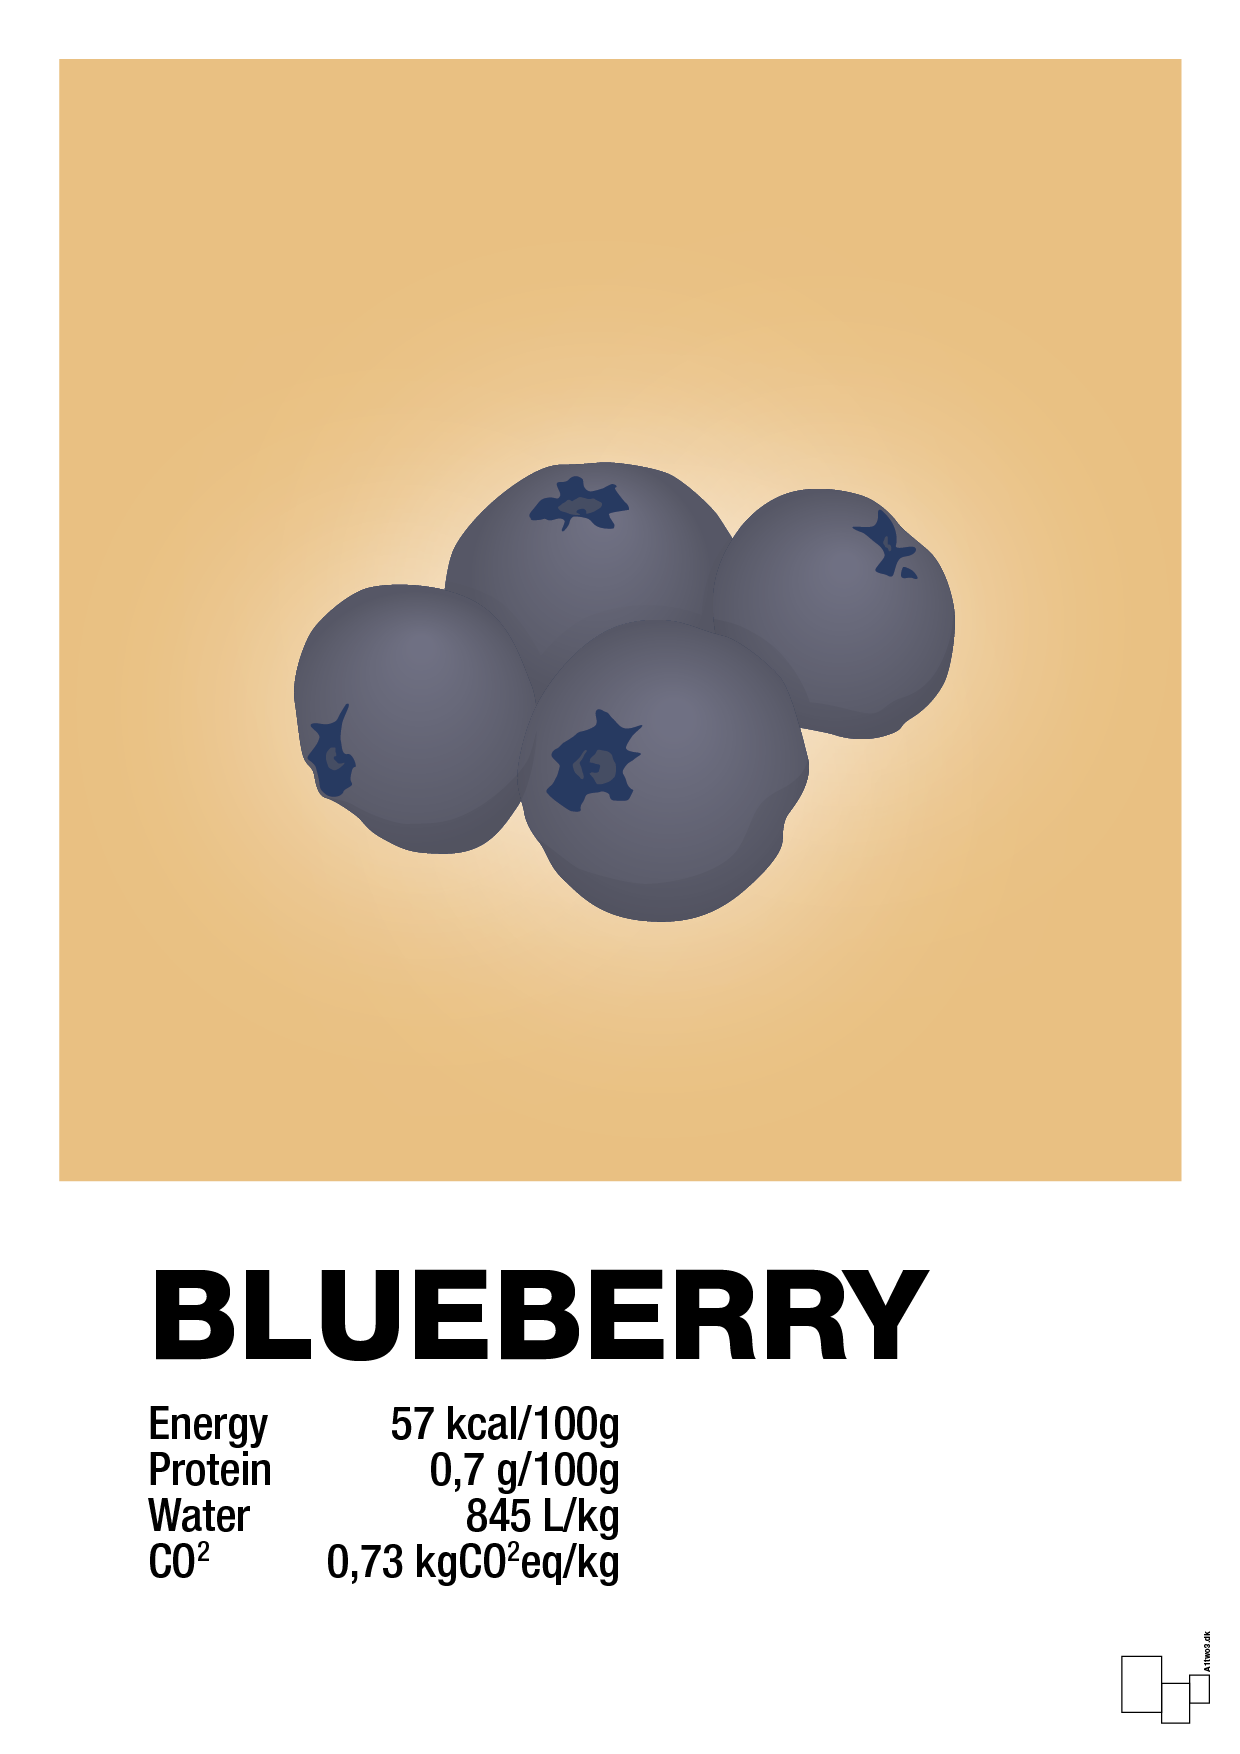 blueberry nutrition og miljø - Plakat med Mad & Drikke i Charismatic